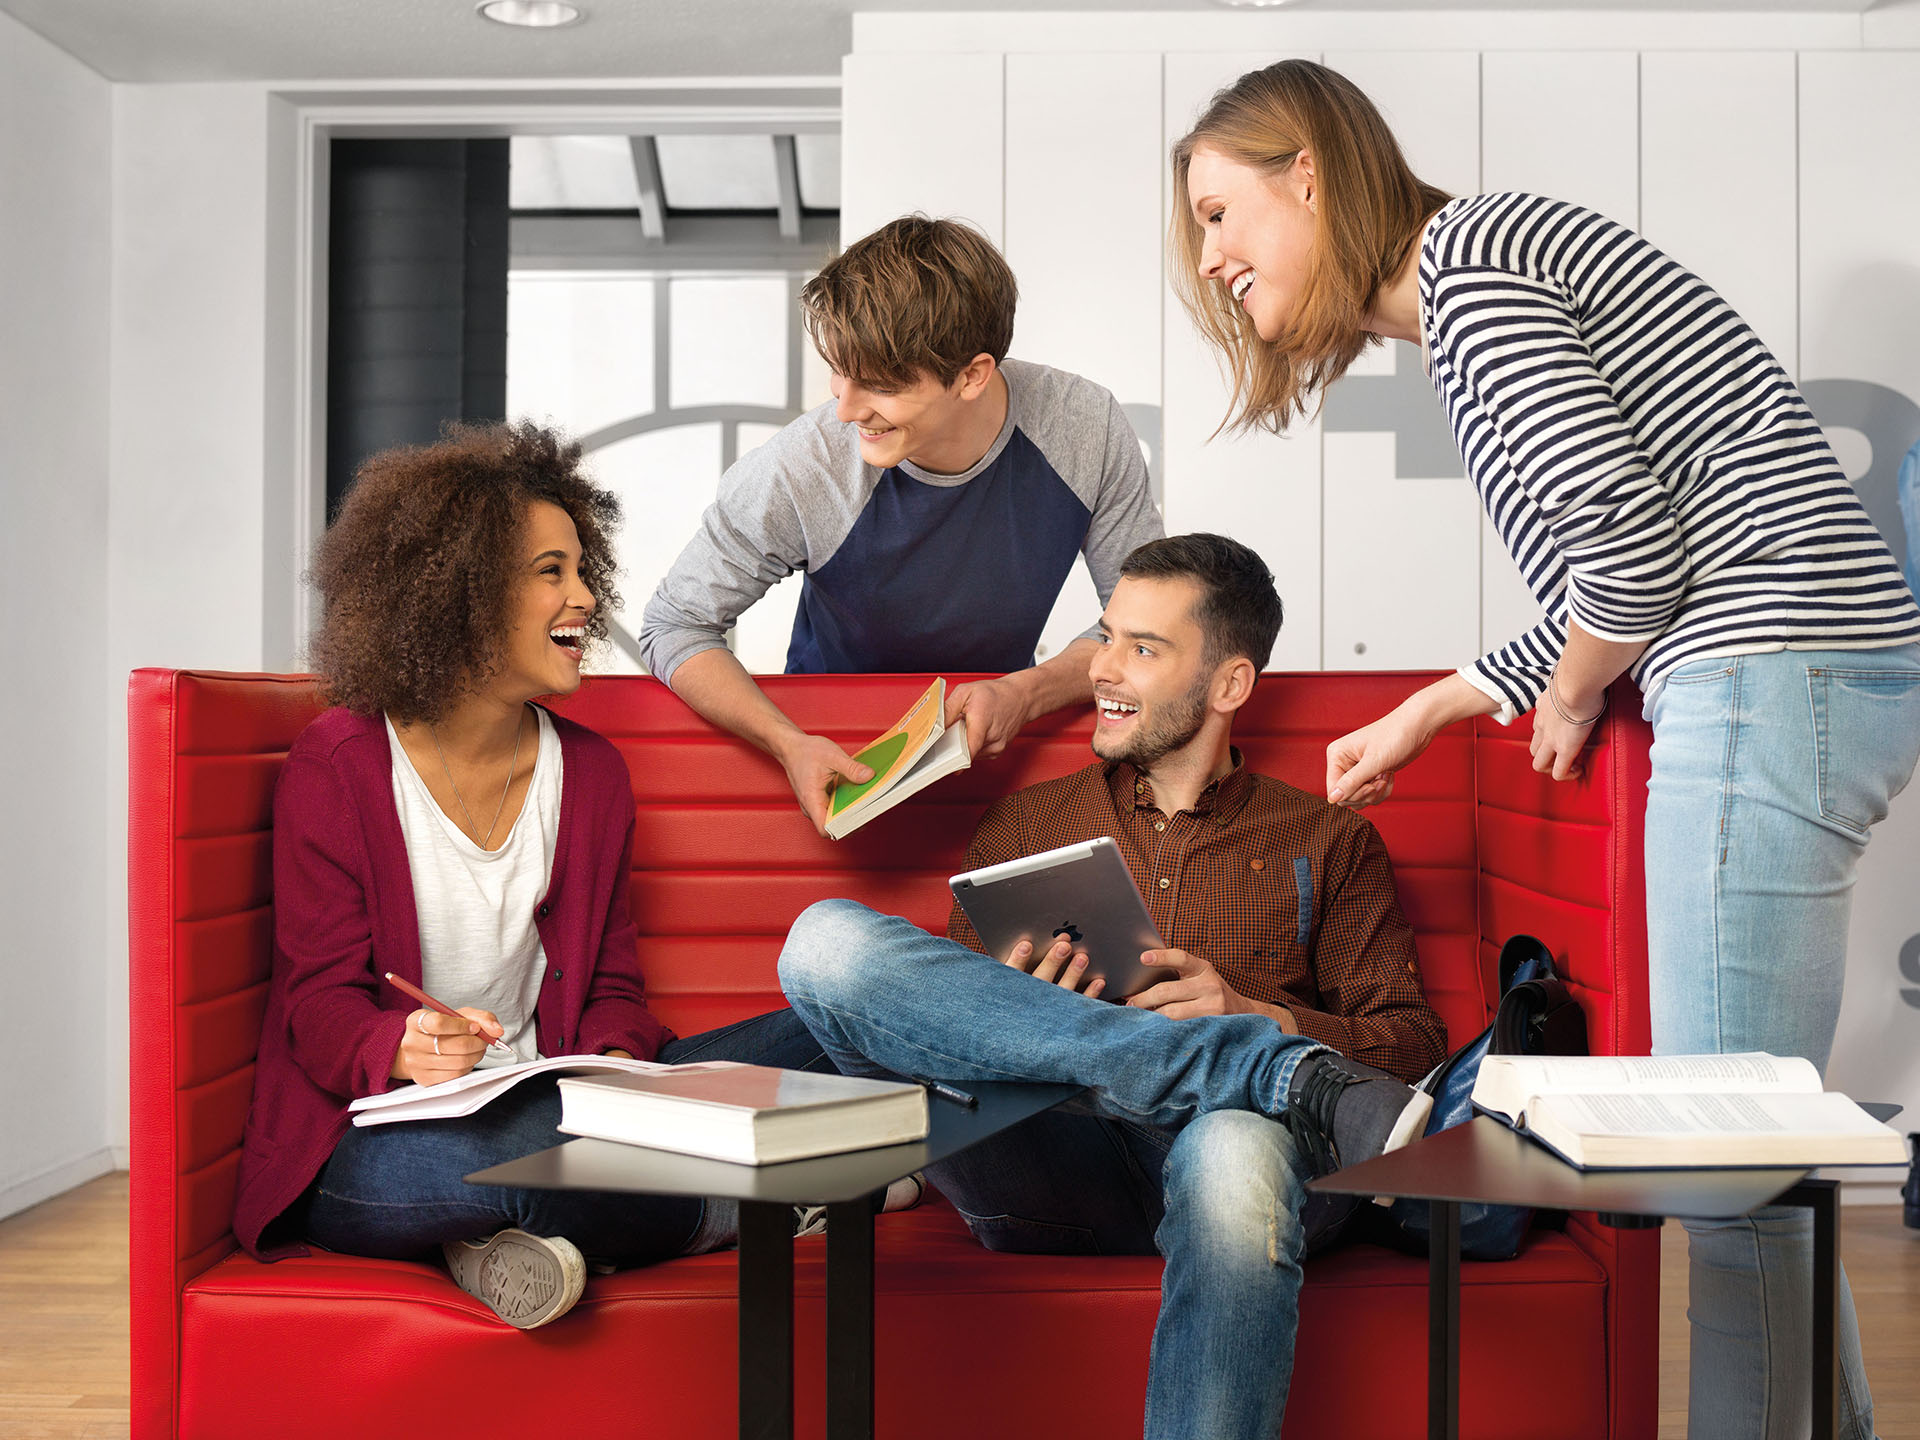 Ein Student und eine Studentin sitzen auf einem roten Sofa und unterhalten sich mit einem weiteren Studenten und einer Studentin.